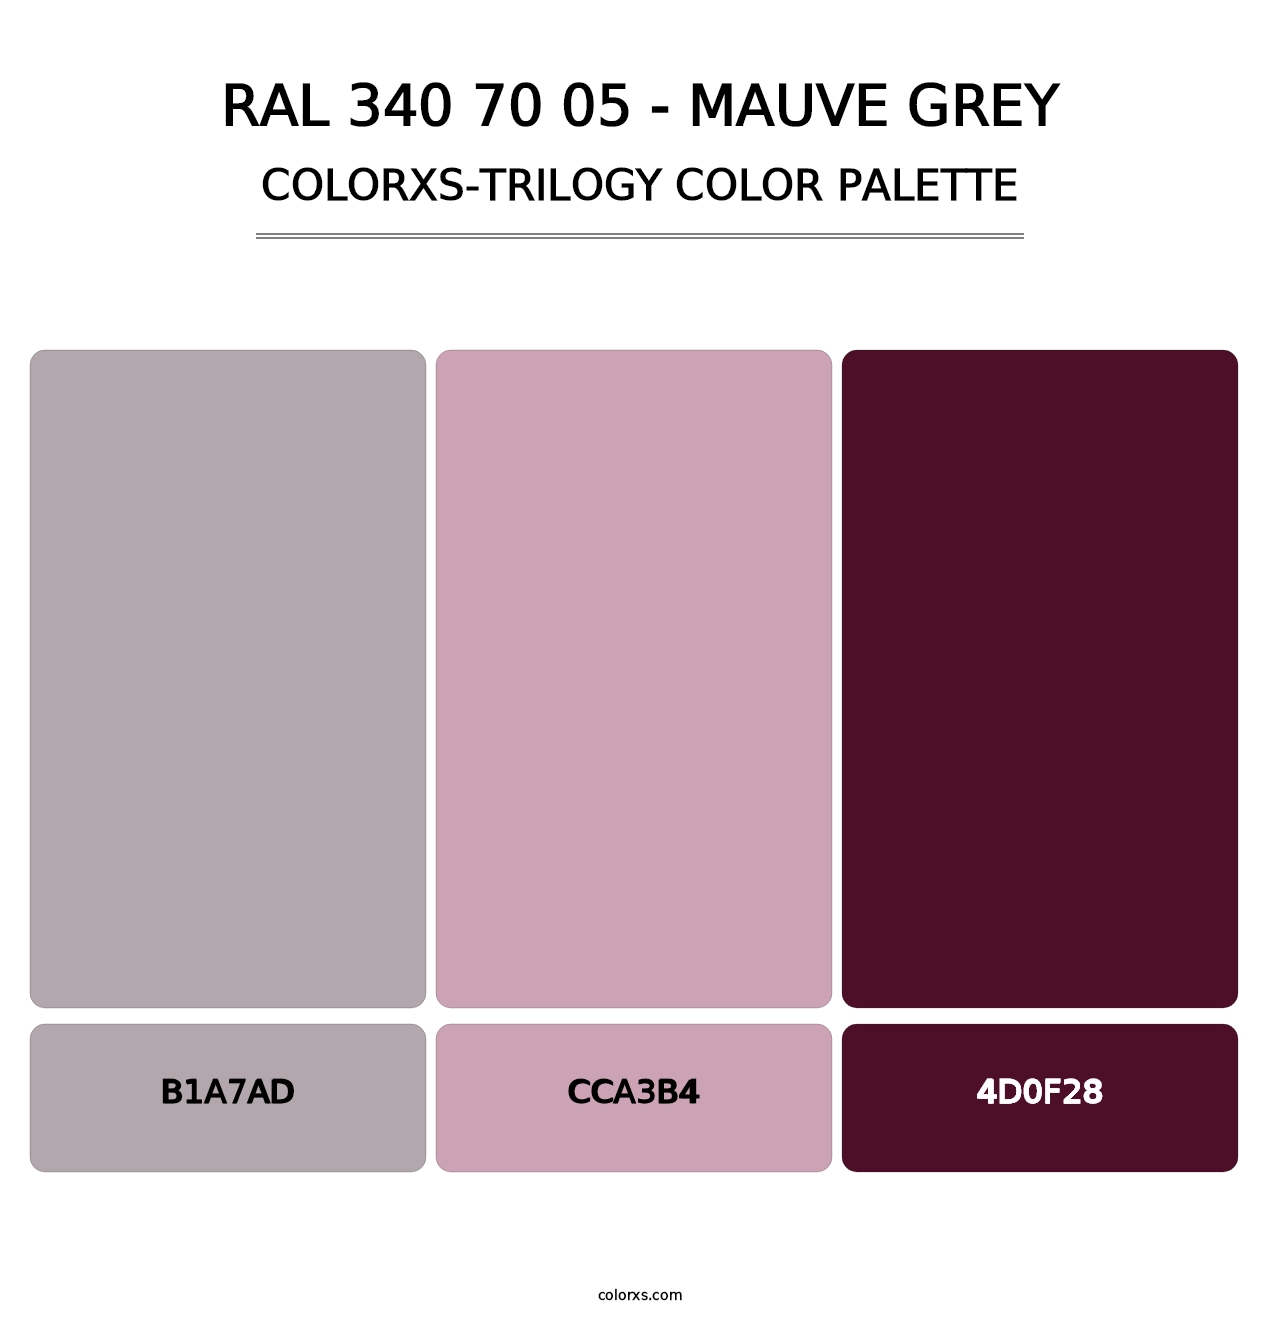 RAL 340 70 05 - Mauve Grey - Colorxs Trilogy Palette